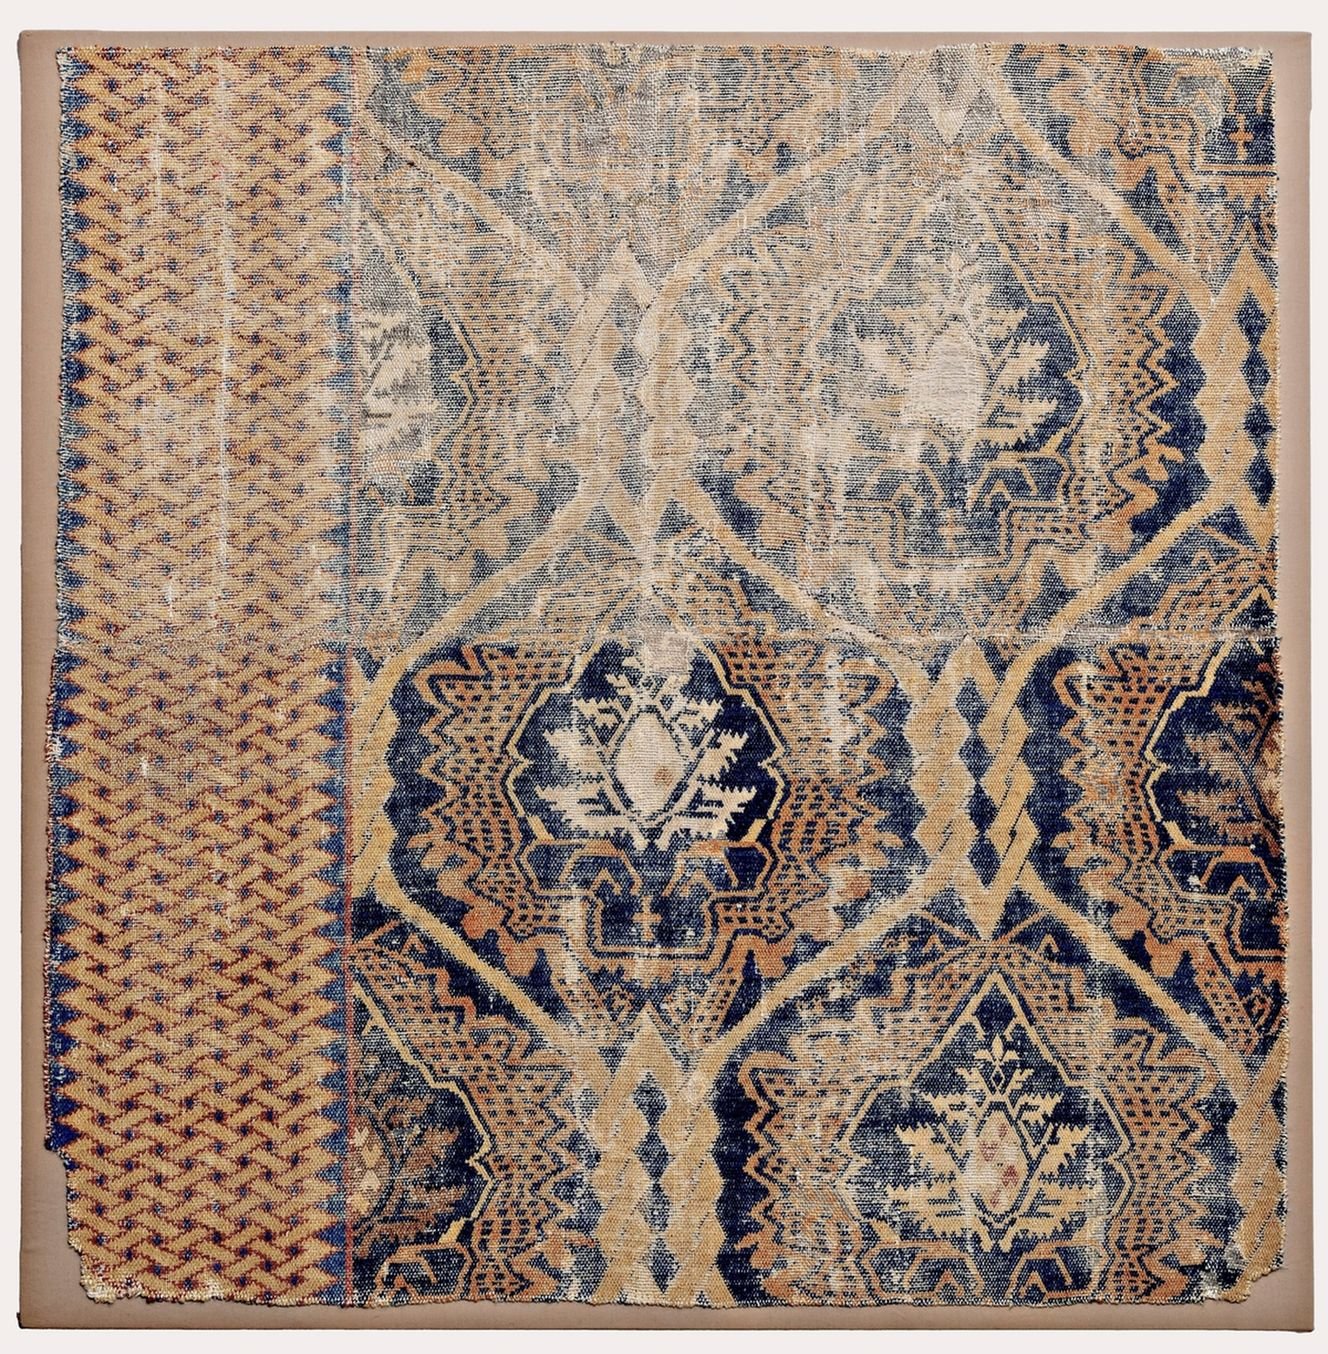 Frammento di un tappeto a motivo tessile, Spagna, secondo quarto del XV secolo. Fondazione Bruschettini per l'Arte Islamica e Asiatica, Genova